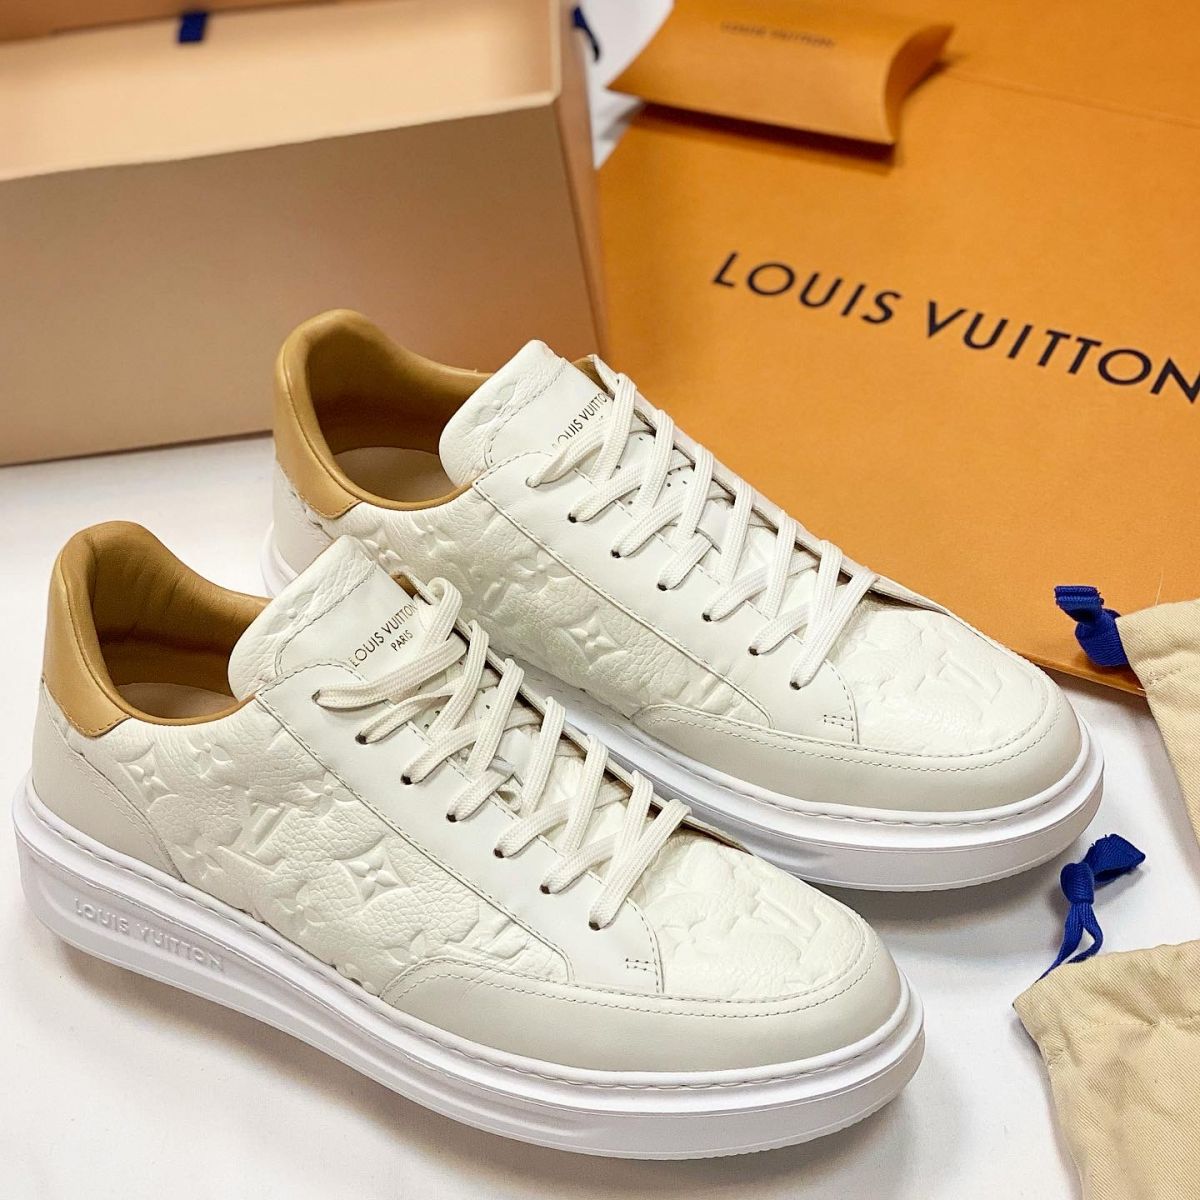 Кеды Louis Vuitton размер 43 цена 61 540 руб / новые / упаковка /